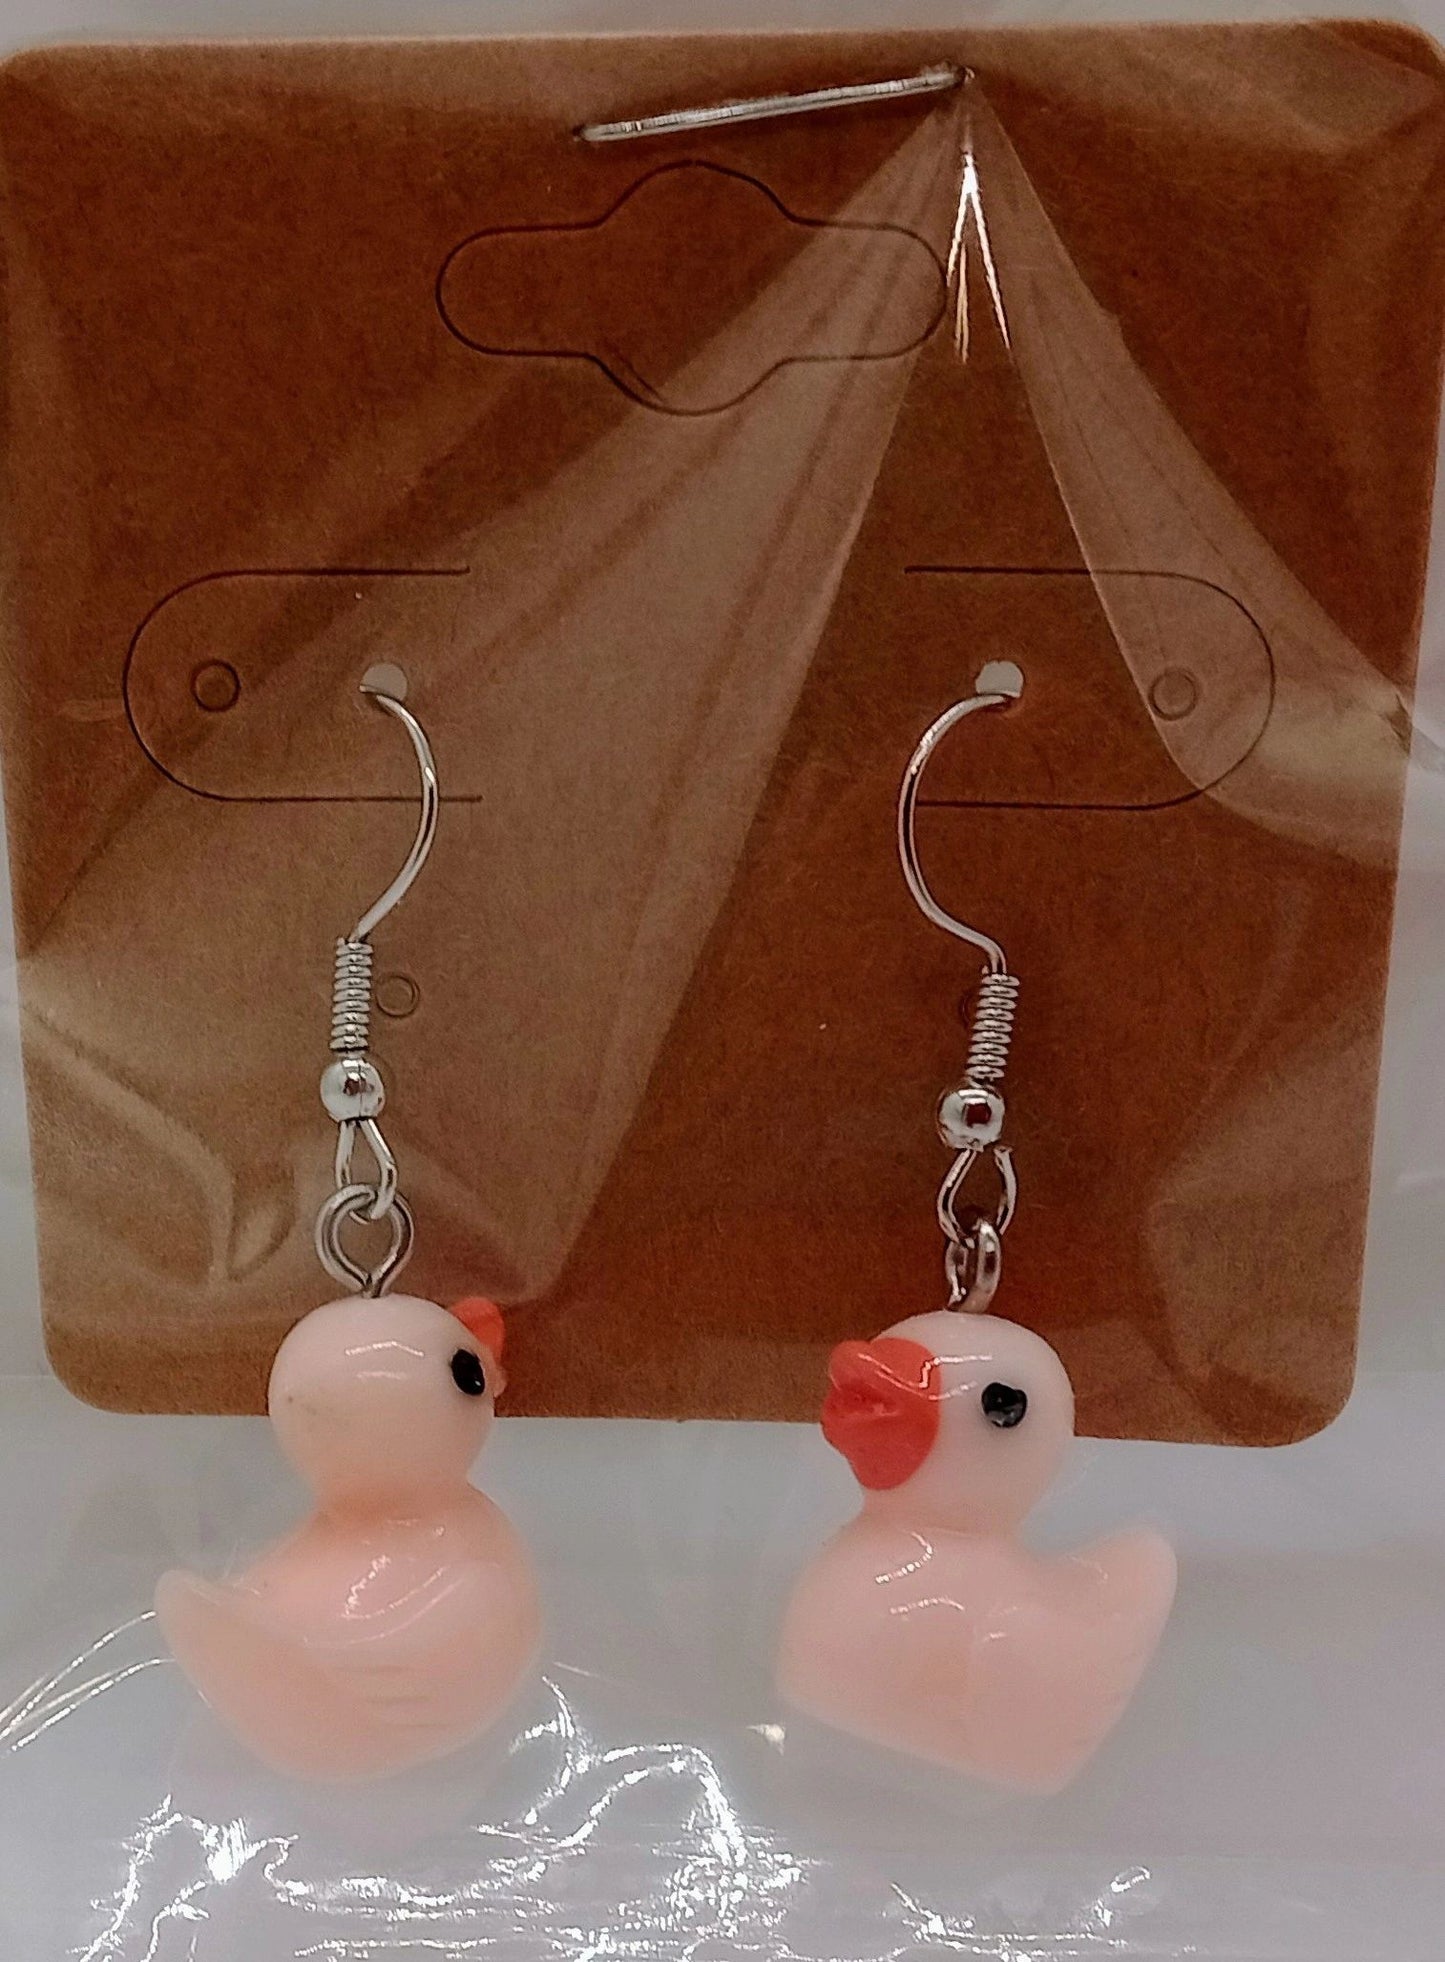 Rubber duckie earrings